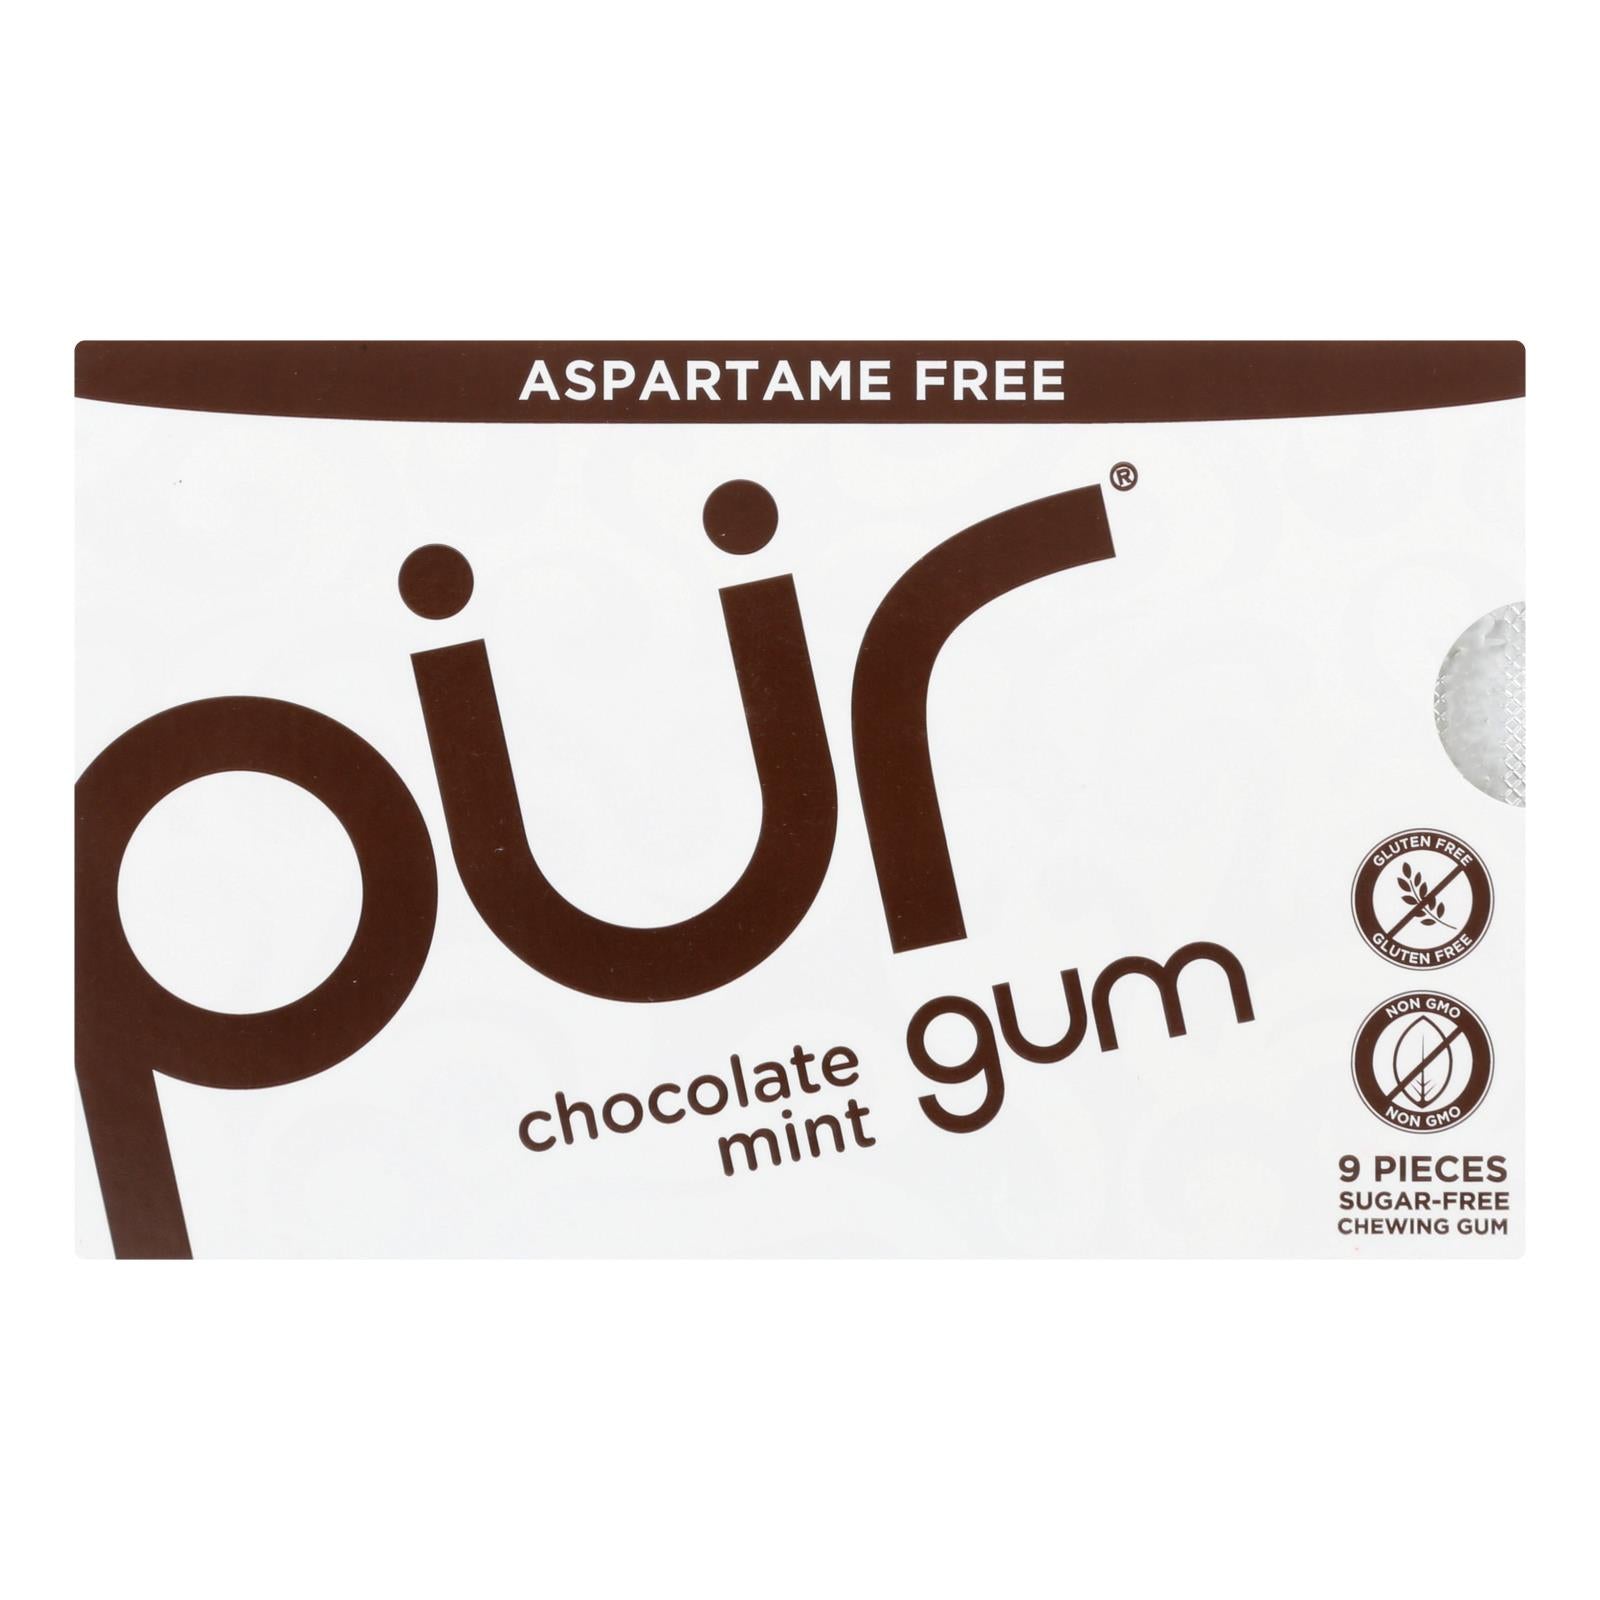 Pur Gum Gum - Chocolate Mint - Case Of 12 - 9 Count